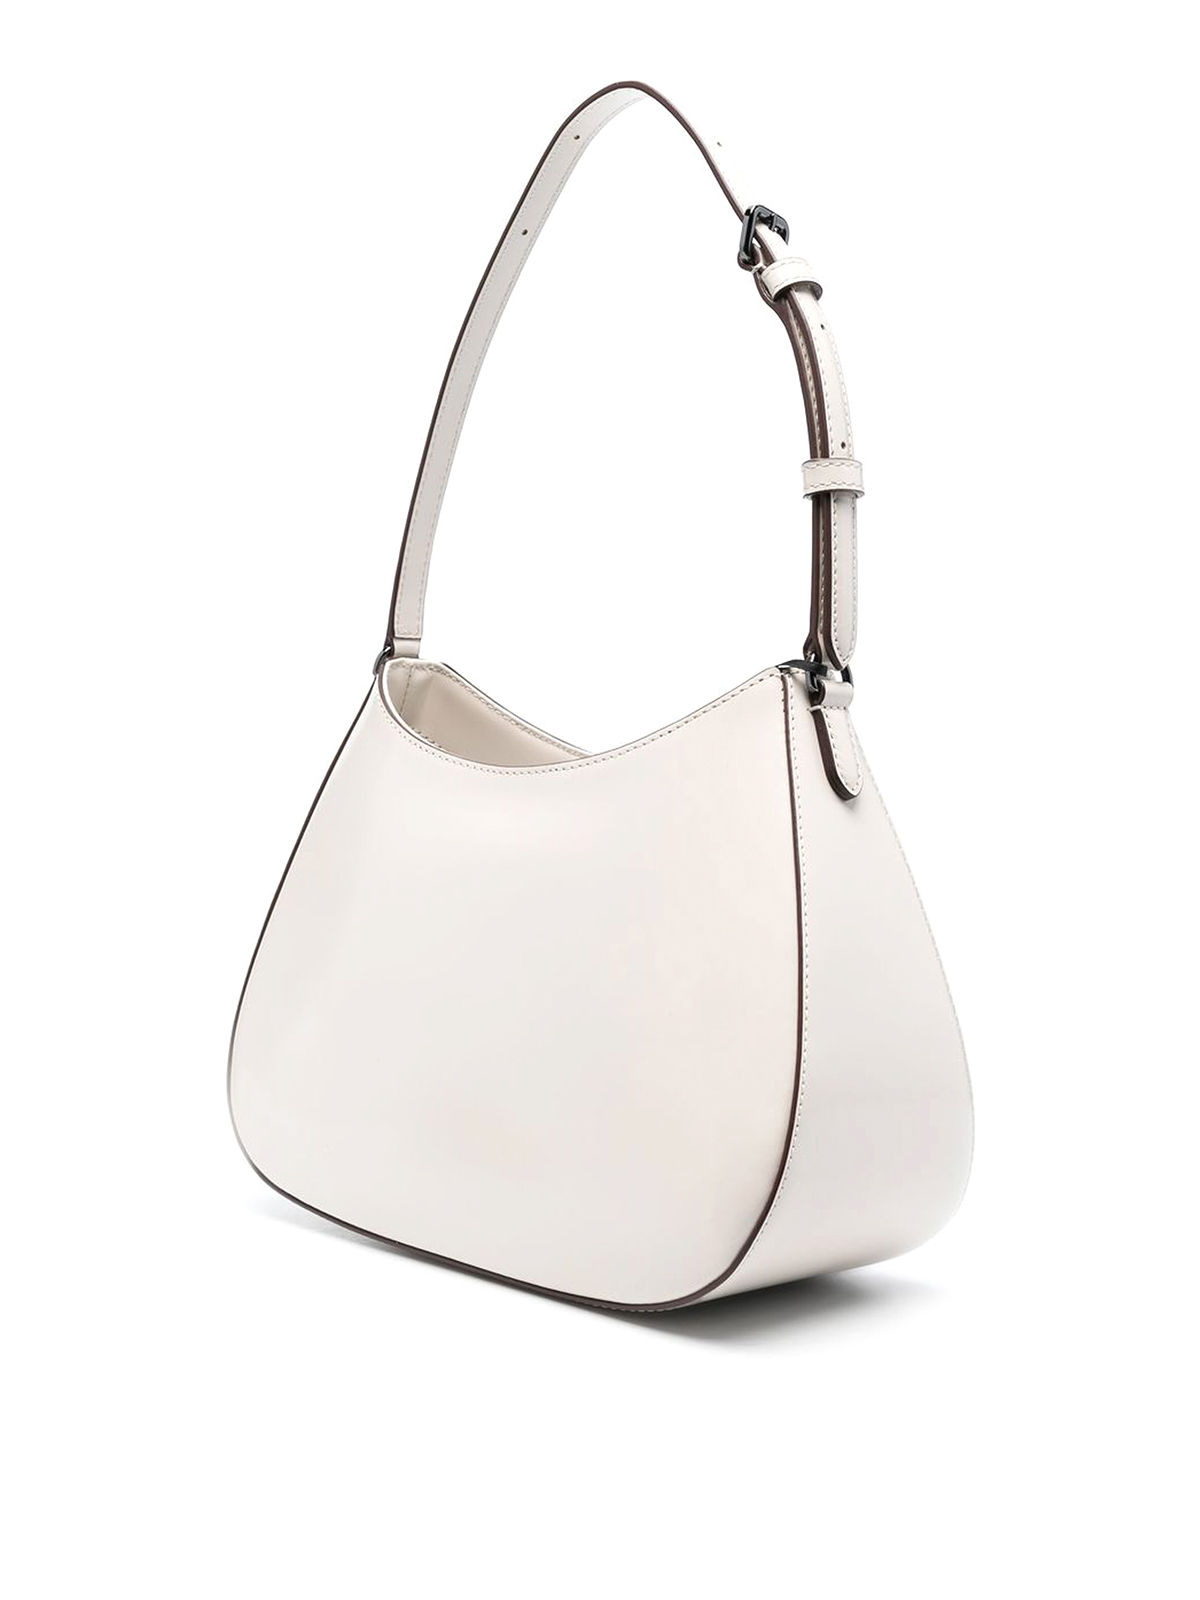 Buy Women's Bags DKNY Accessories Online | Next UK